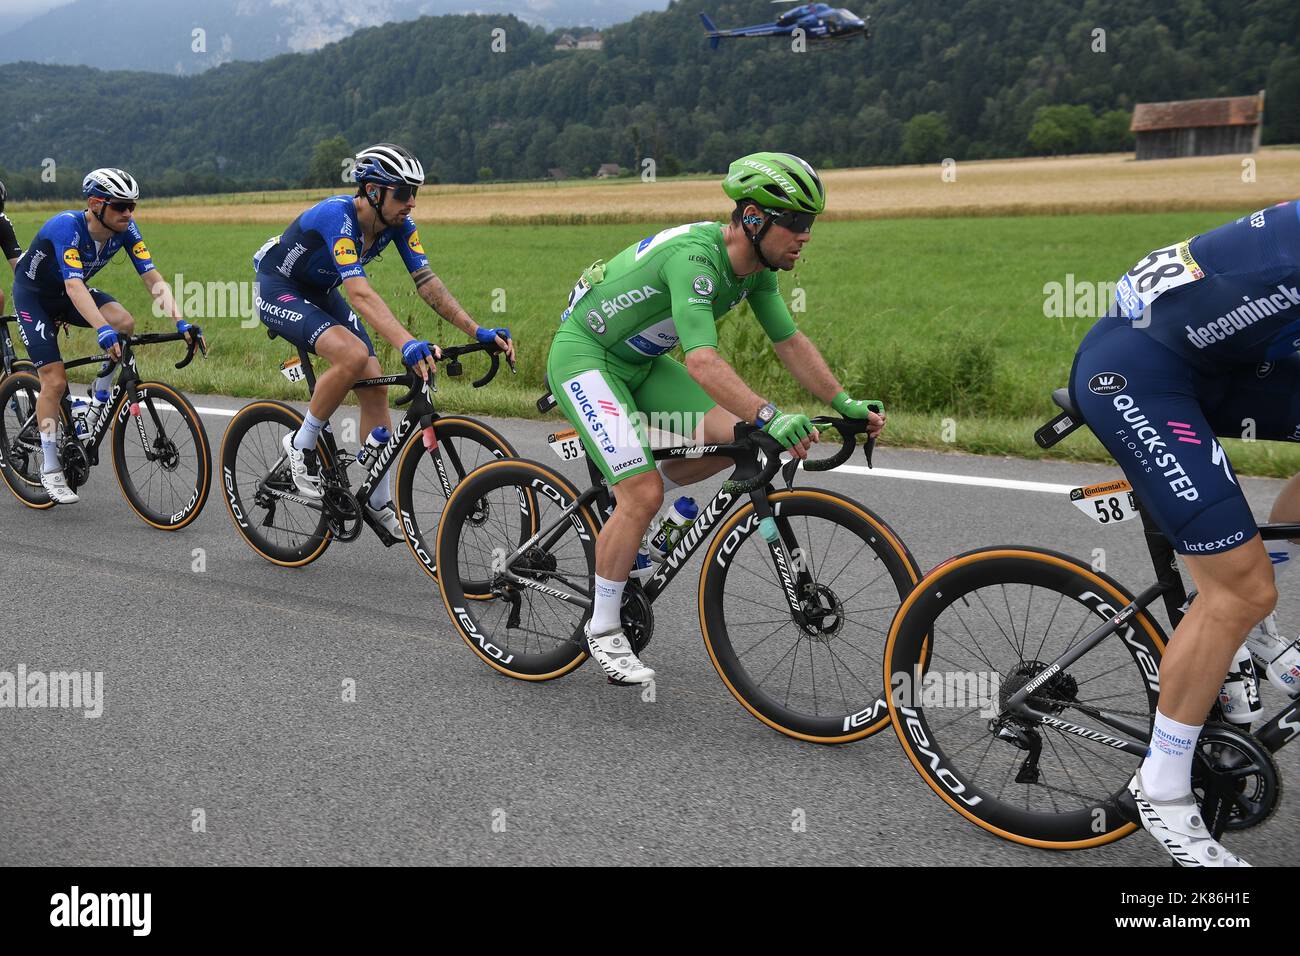 Mark Cavendish (GBR) von DECEUNINCK - QUICK - STEP behält seine Führung in der Punktekategorie, nachdem er die Etappe im Sprint gewonnen hat - gesehen hier während der Etappe 10 der Tour de France am Montag, 6.. Juli 2021. Stockfoto